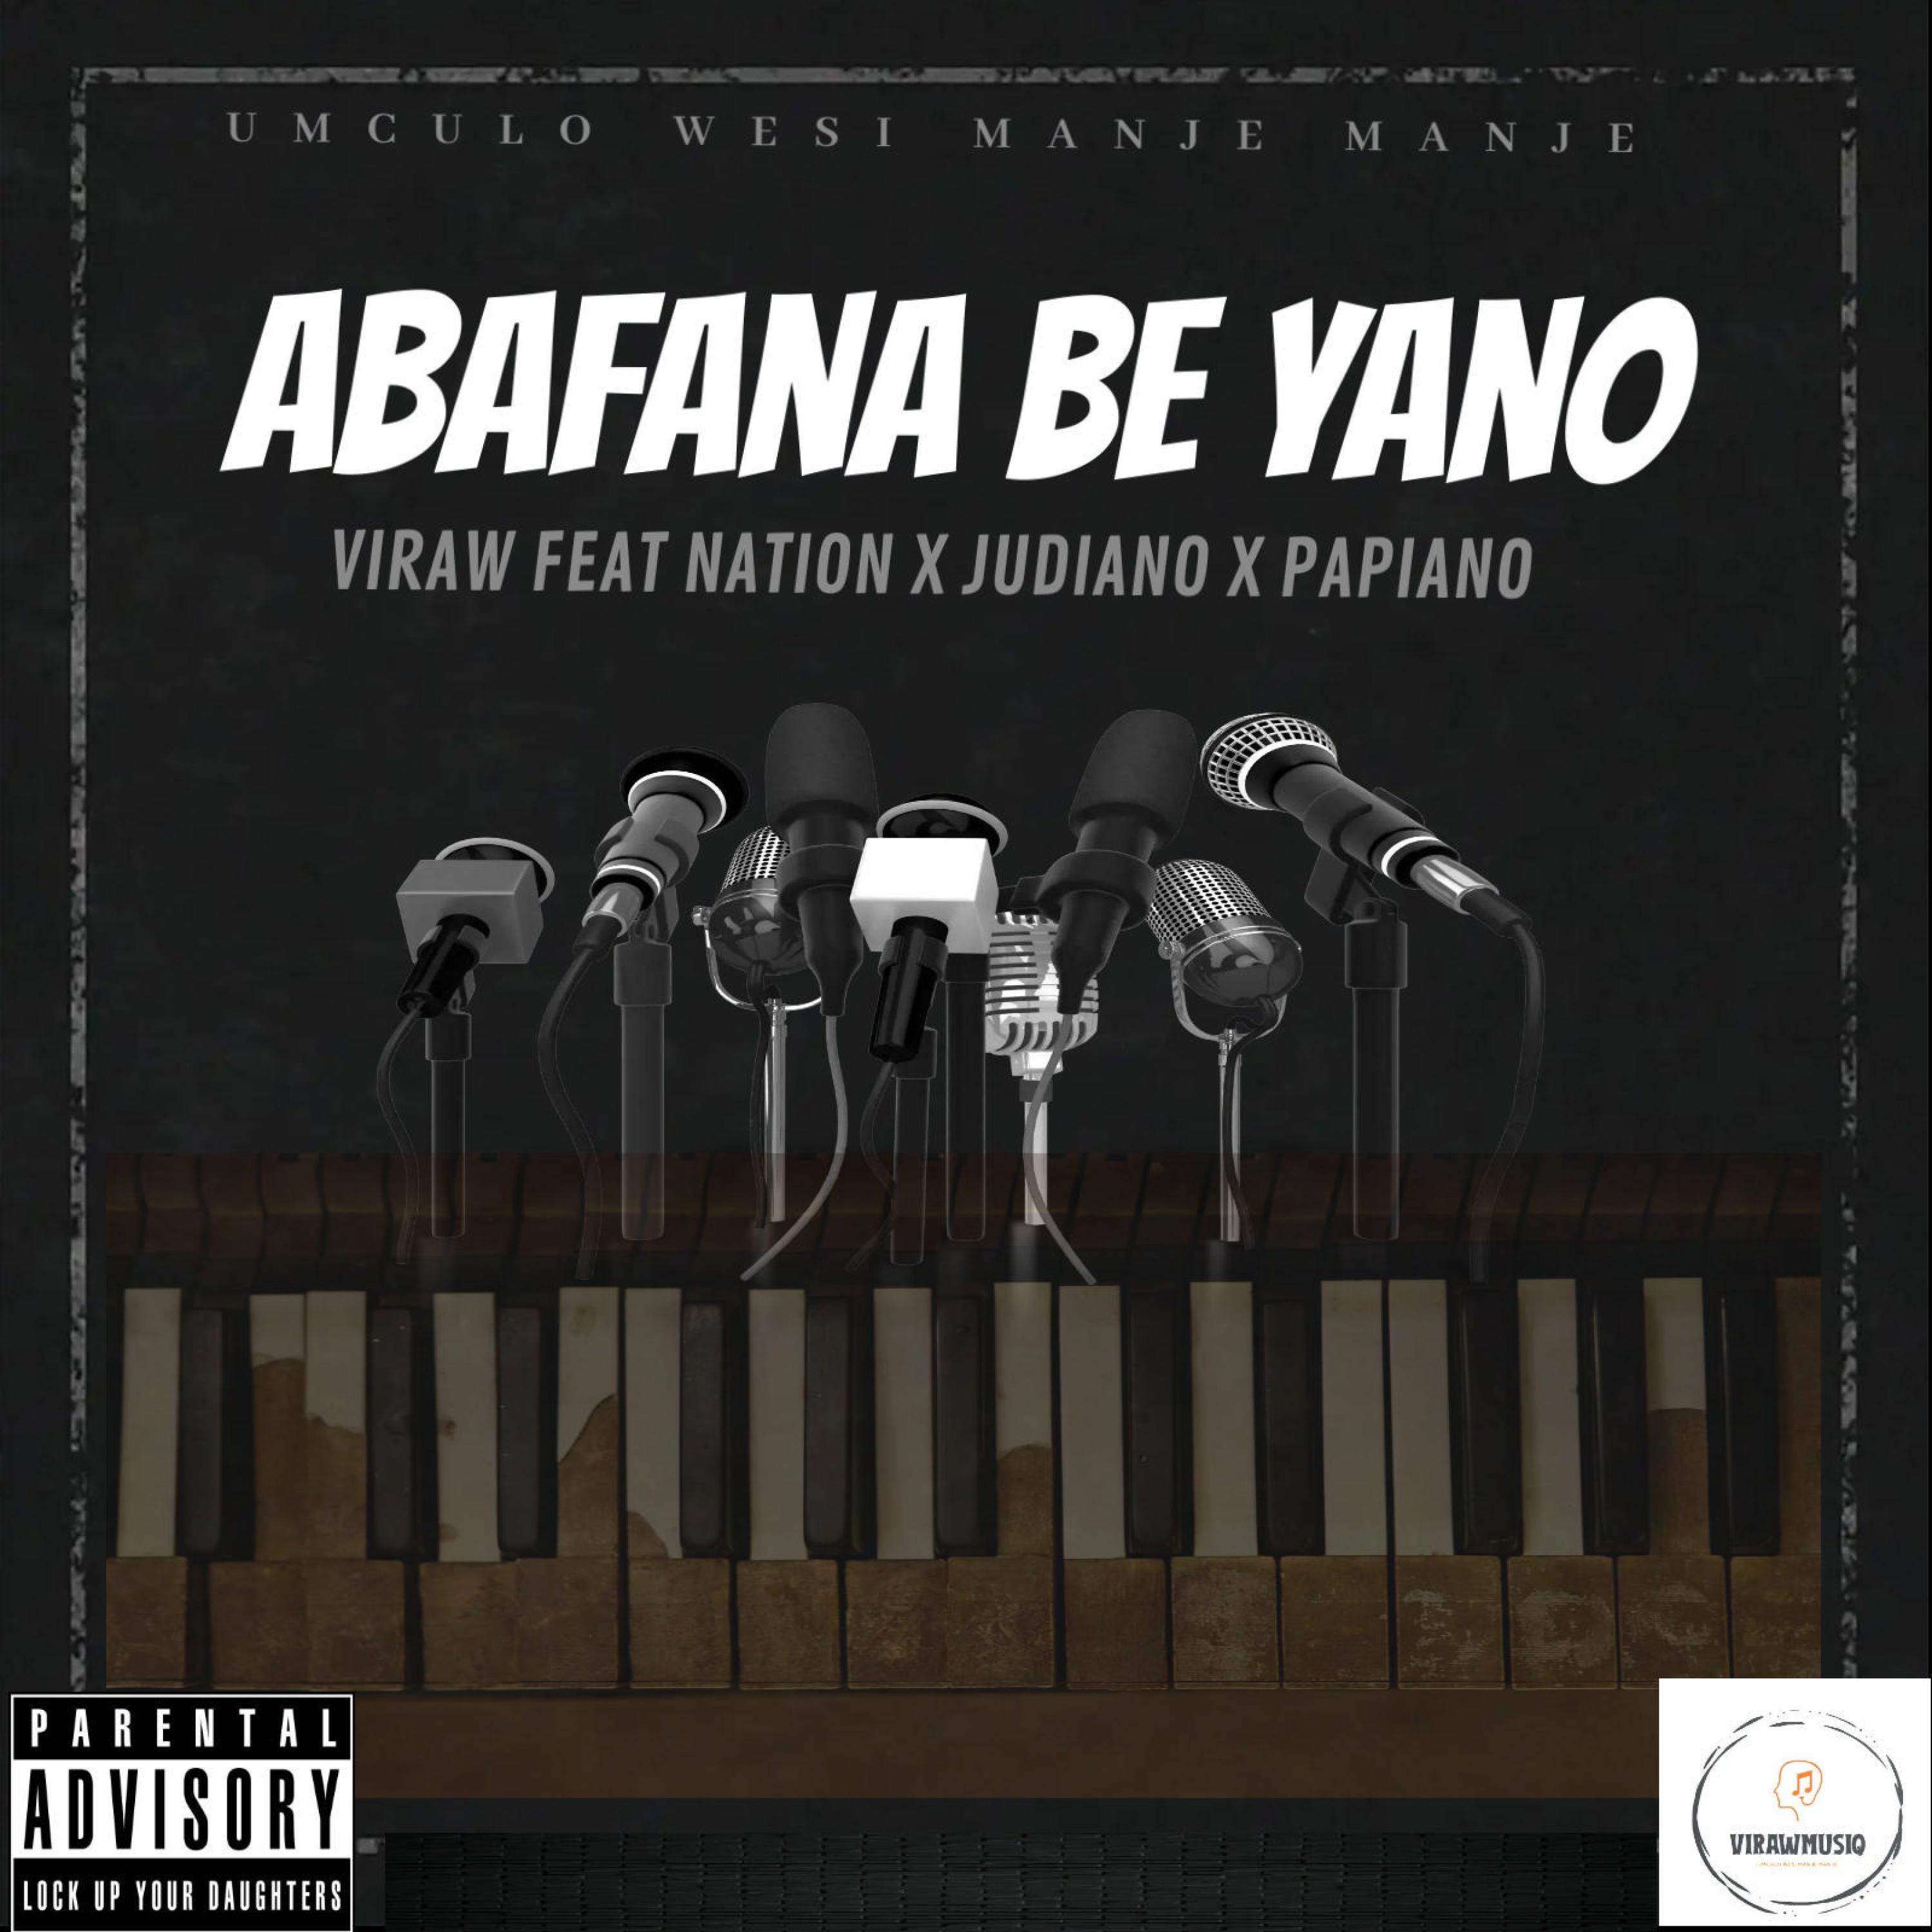 Viraw - Abafana be yano (feat. Nation 365, Judiano & Papiano)